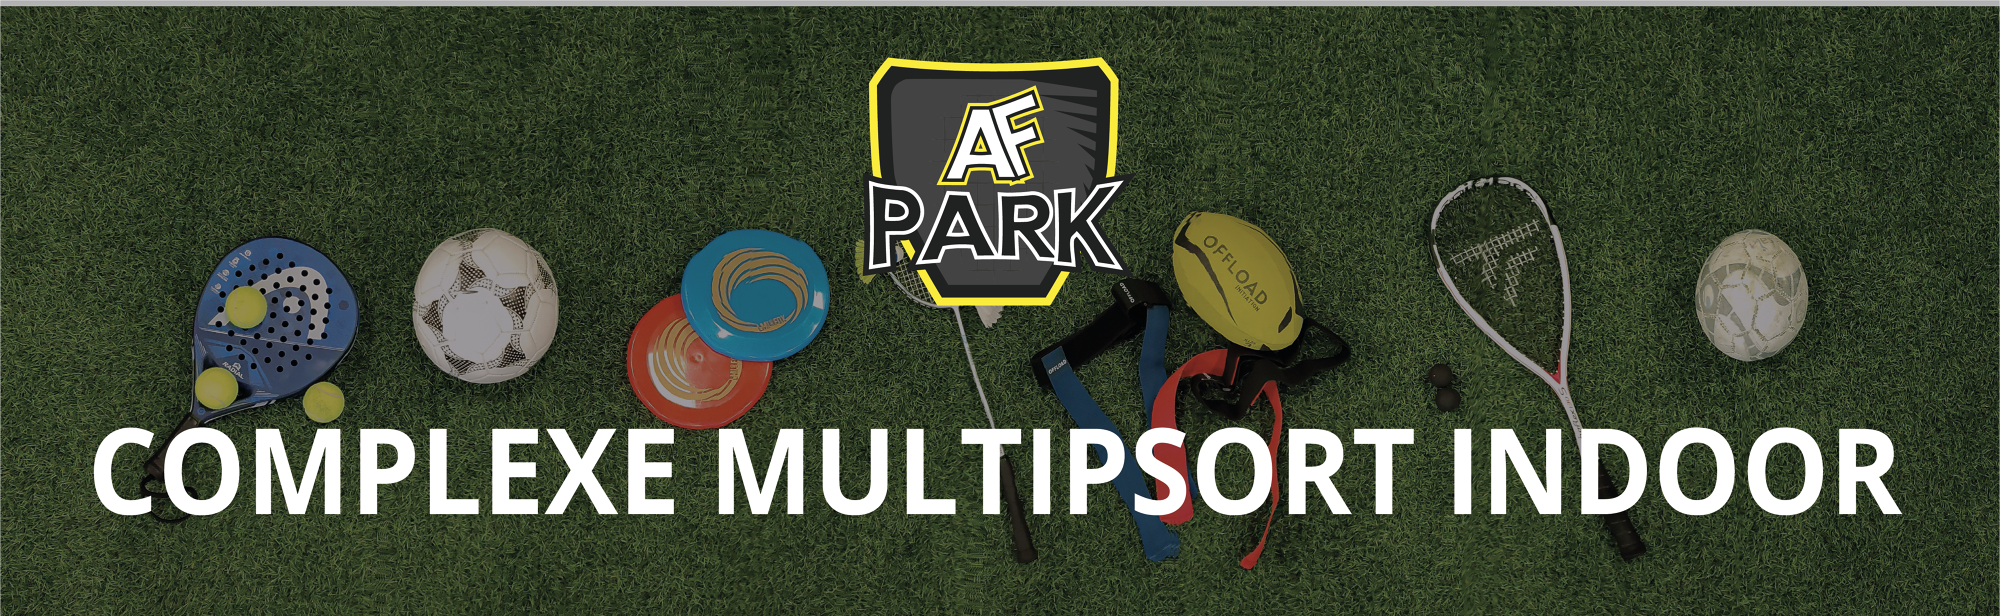 AF PARK | AF Park - Complexe multisport indoor